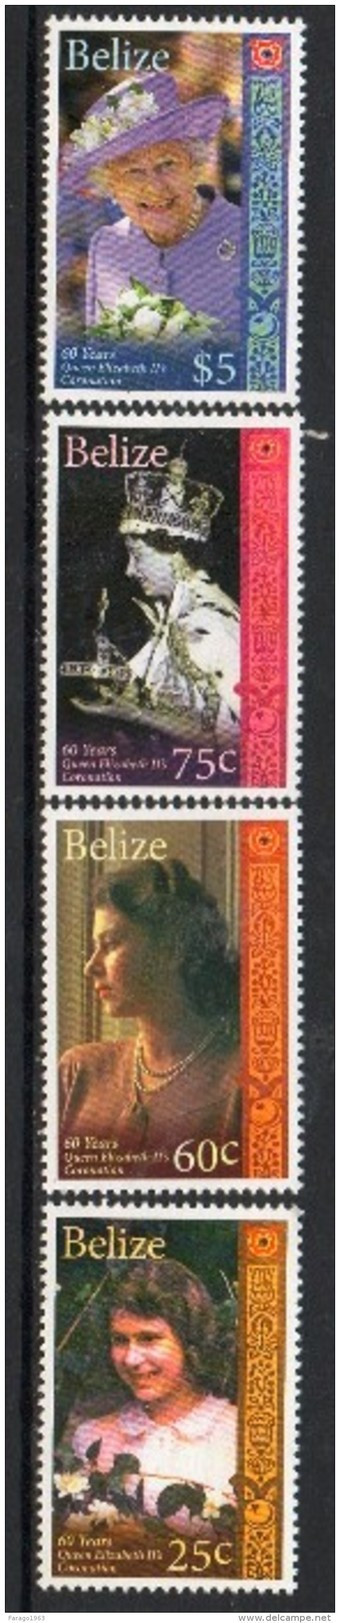 2013 Belize QEII Coronation Anniversary Complete Set Of 4 + Souvenir Sheet MNH - Belize (1973-...)